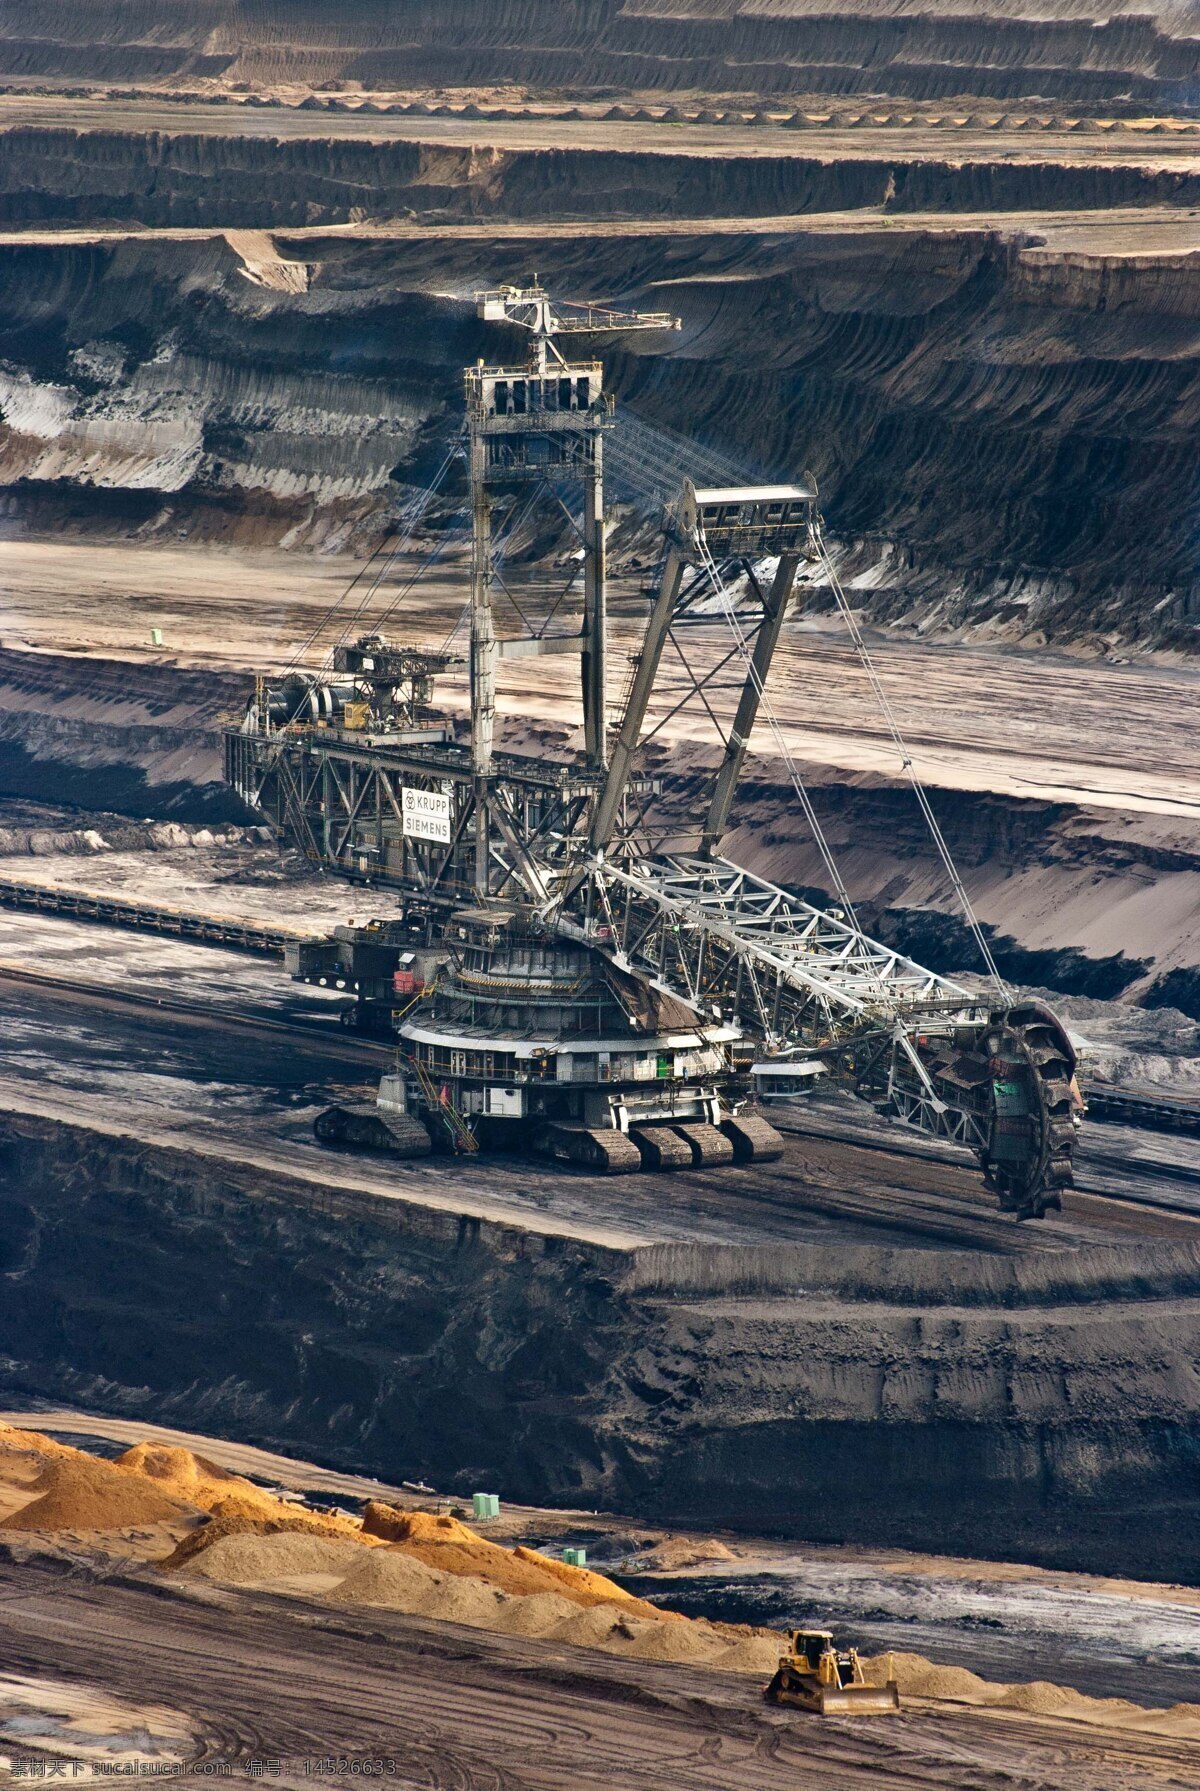 露天煤矿 煤矿 露天 室外 机械作业 煤炭 素材之家 现代科技 工业生产